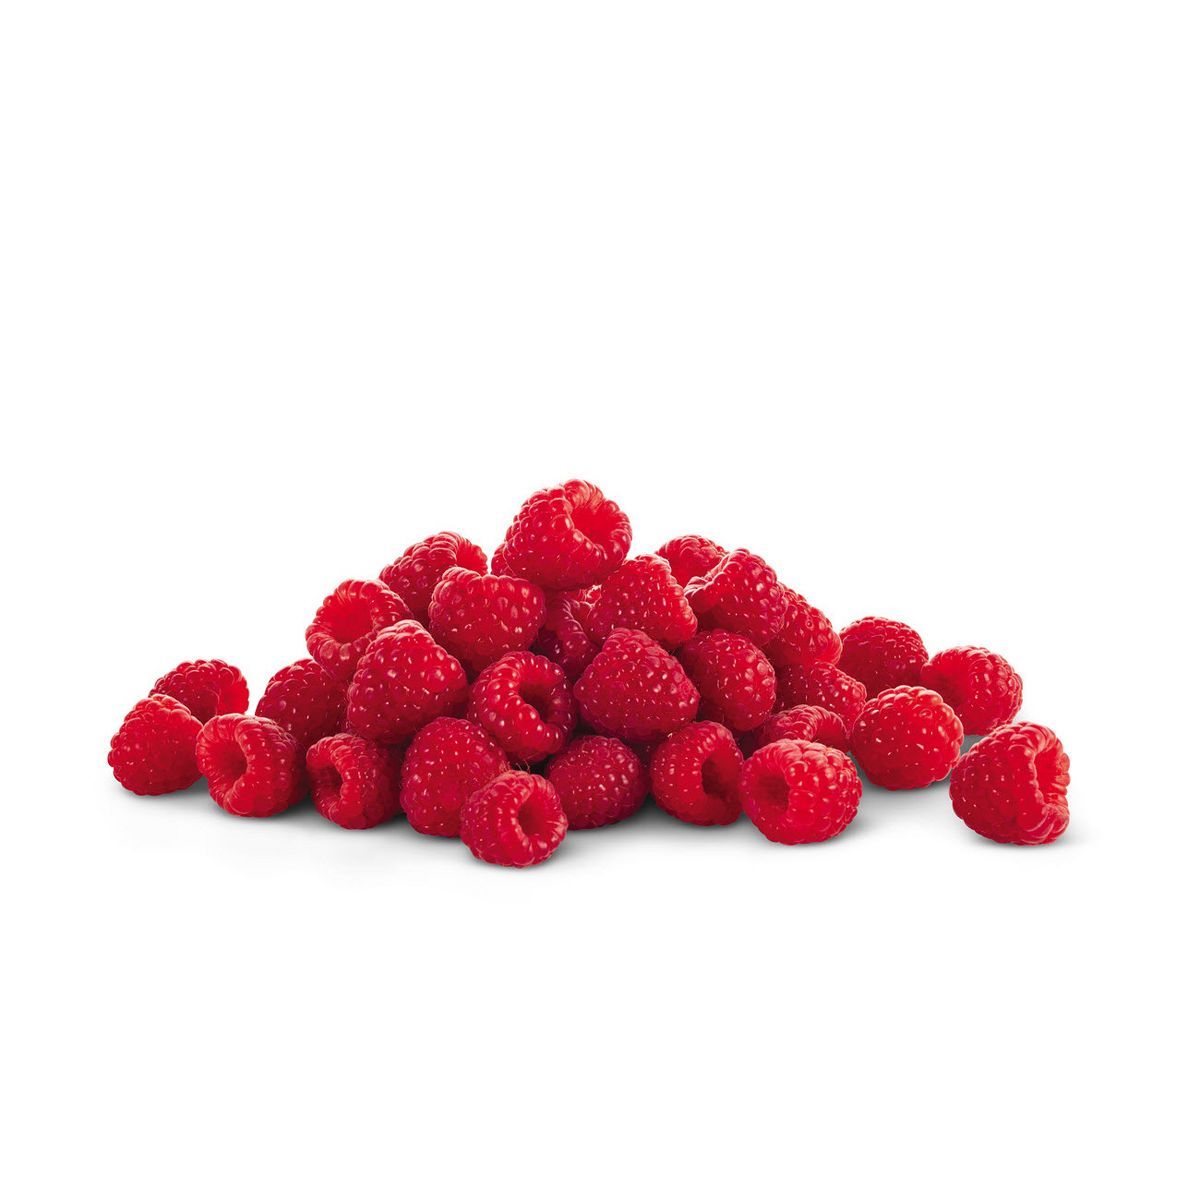 Raspberries - 12oz | Target